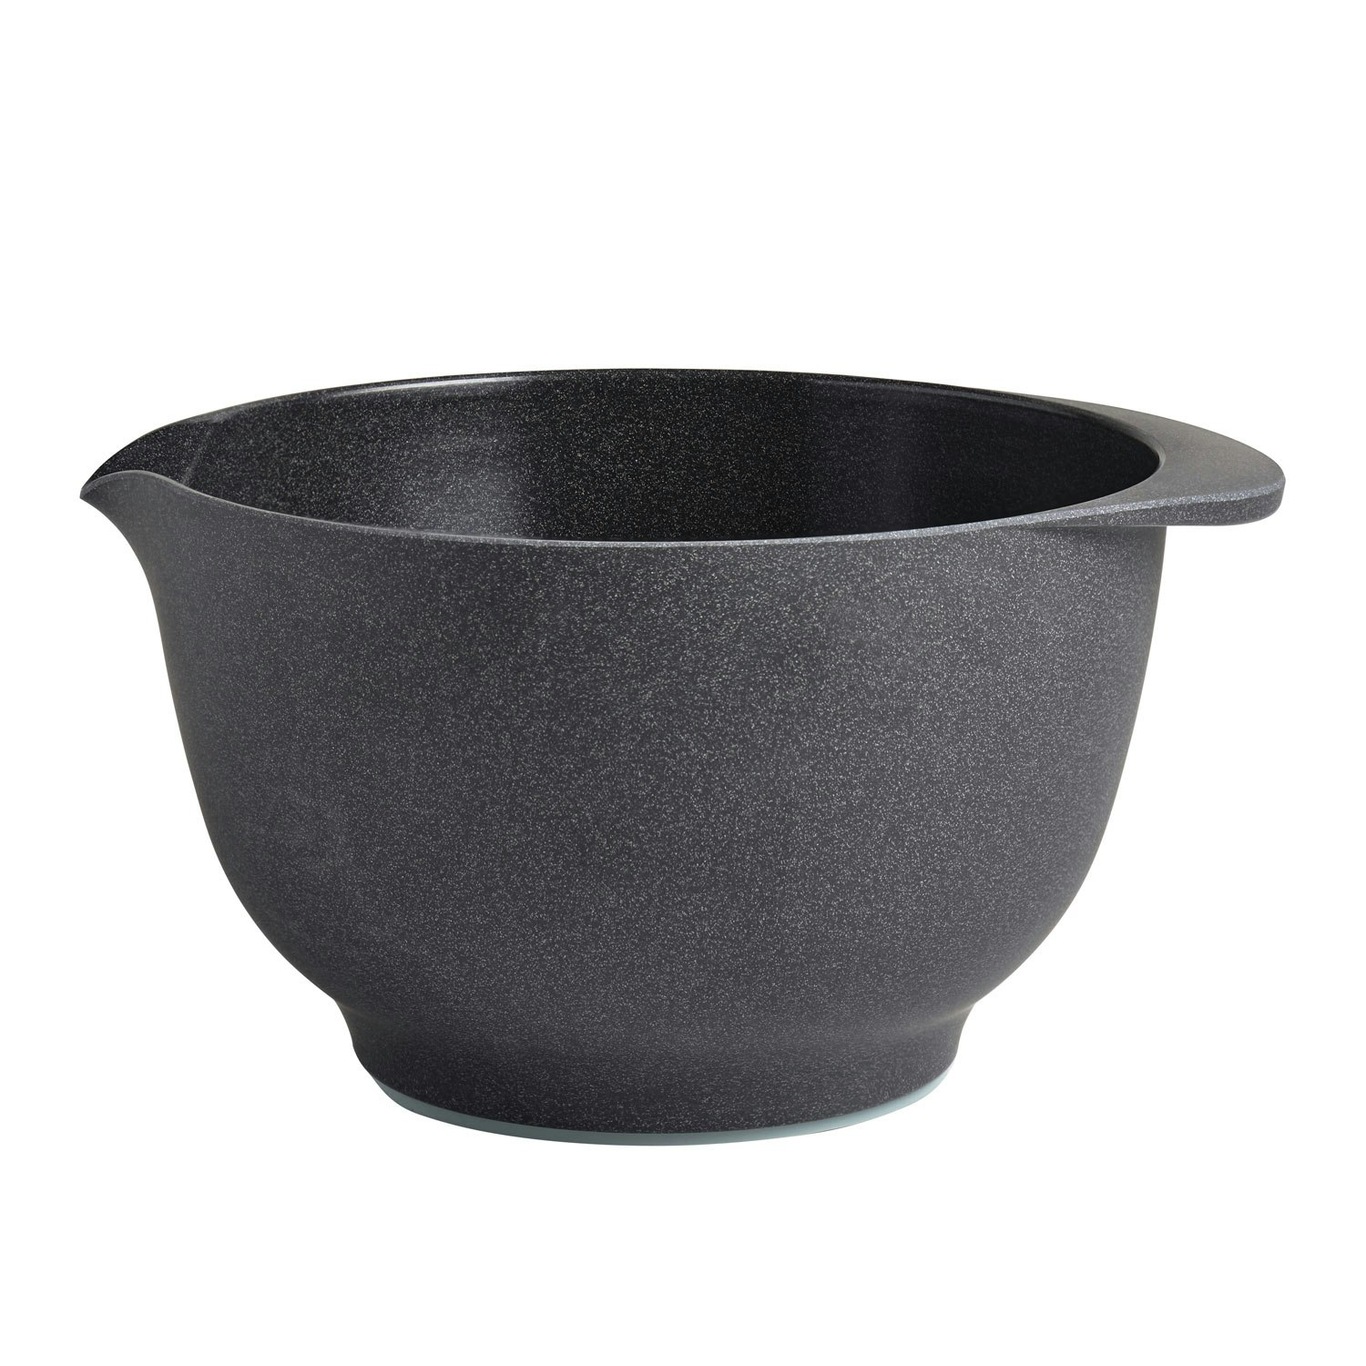 https://royaldesign.com/image/2/rosti-margrethe-bowl-pebble-black-7?w=800&quality=80